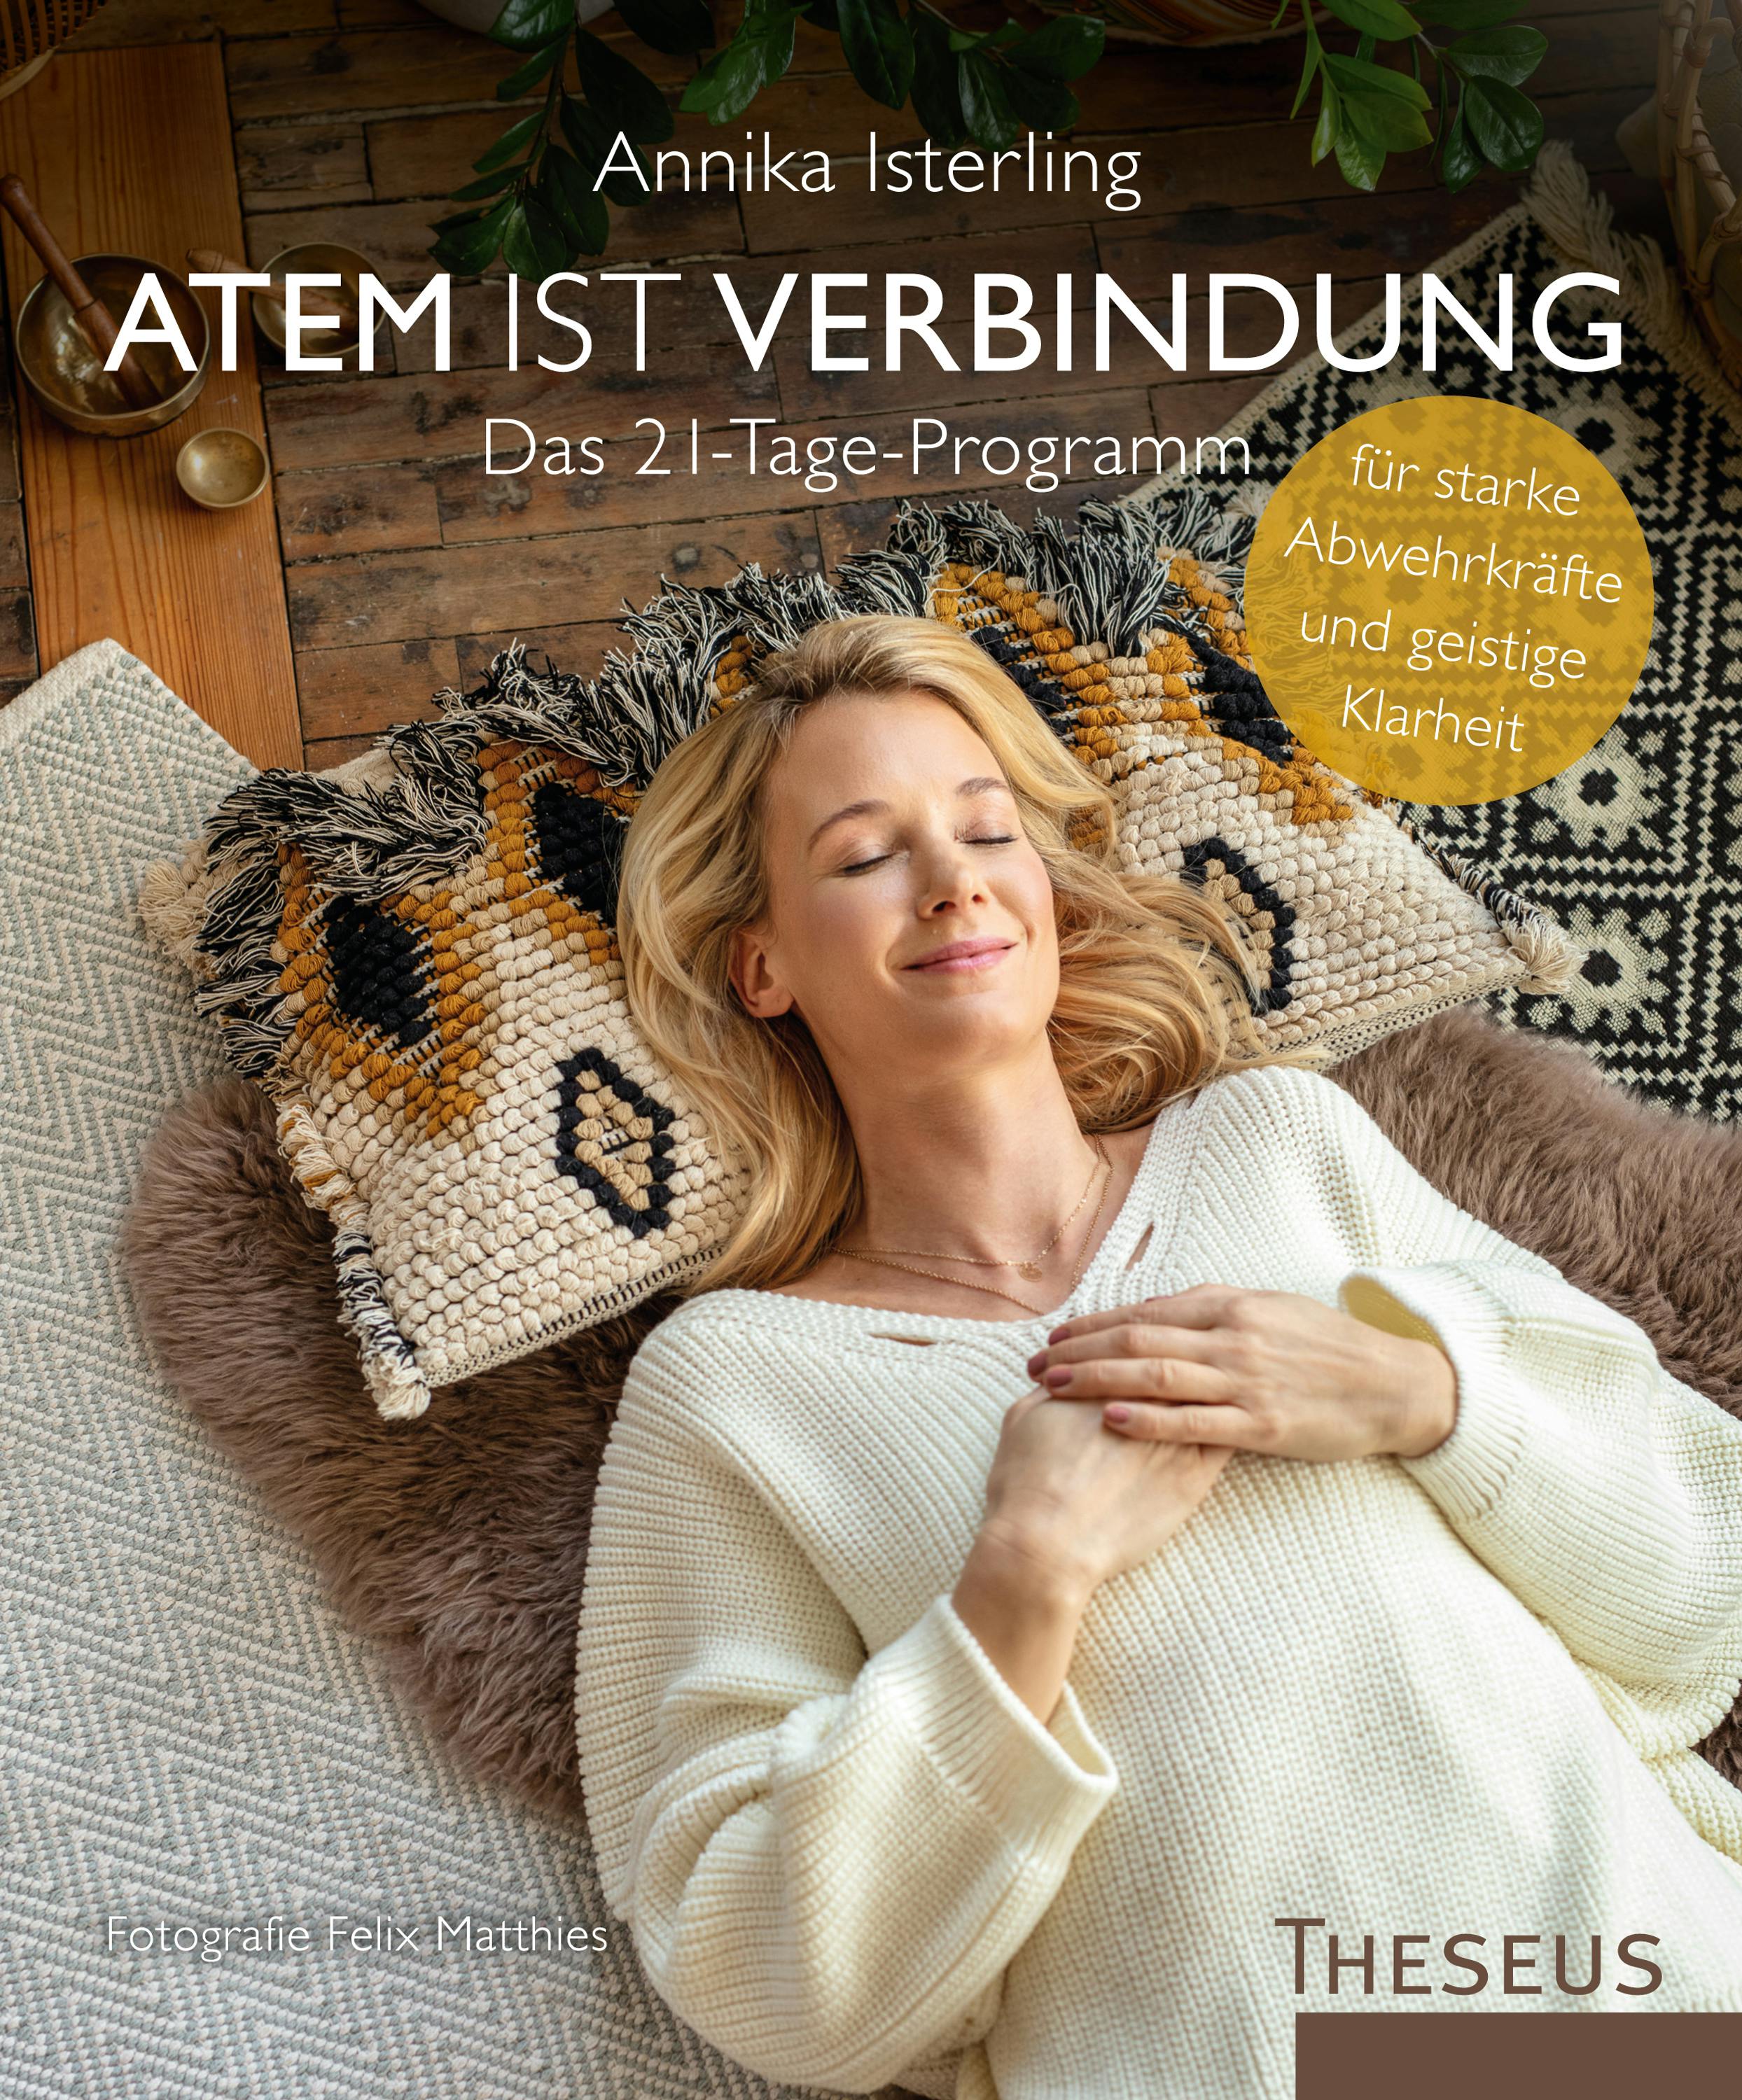 Ein Buch von Annika Isterling: Atem ist Verbindung - Das 21-Tage-Programm